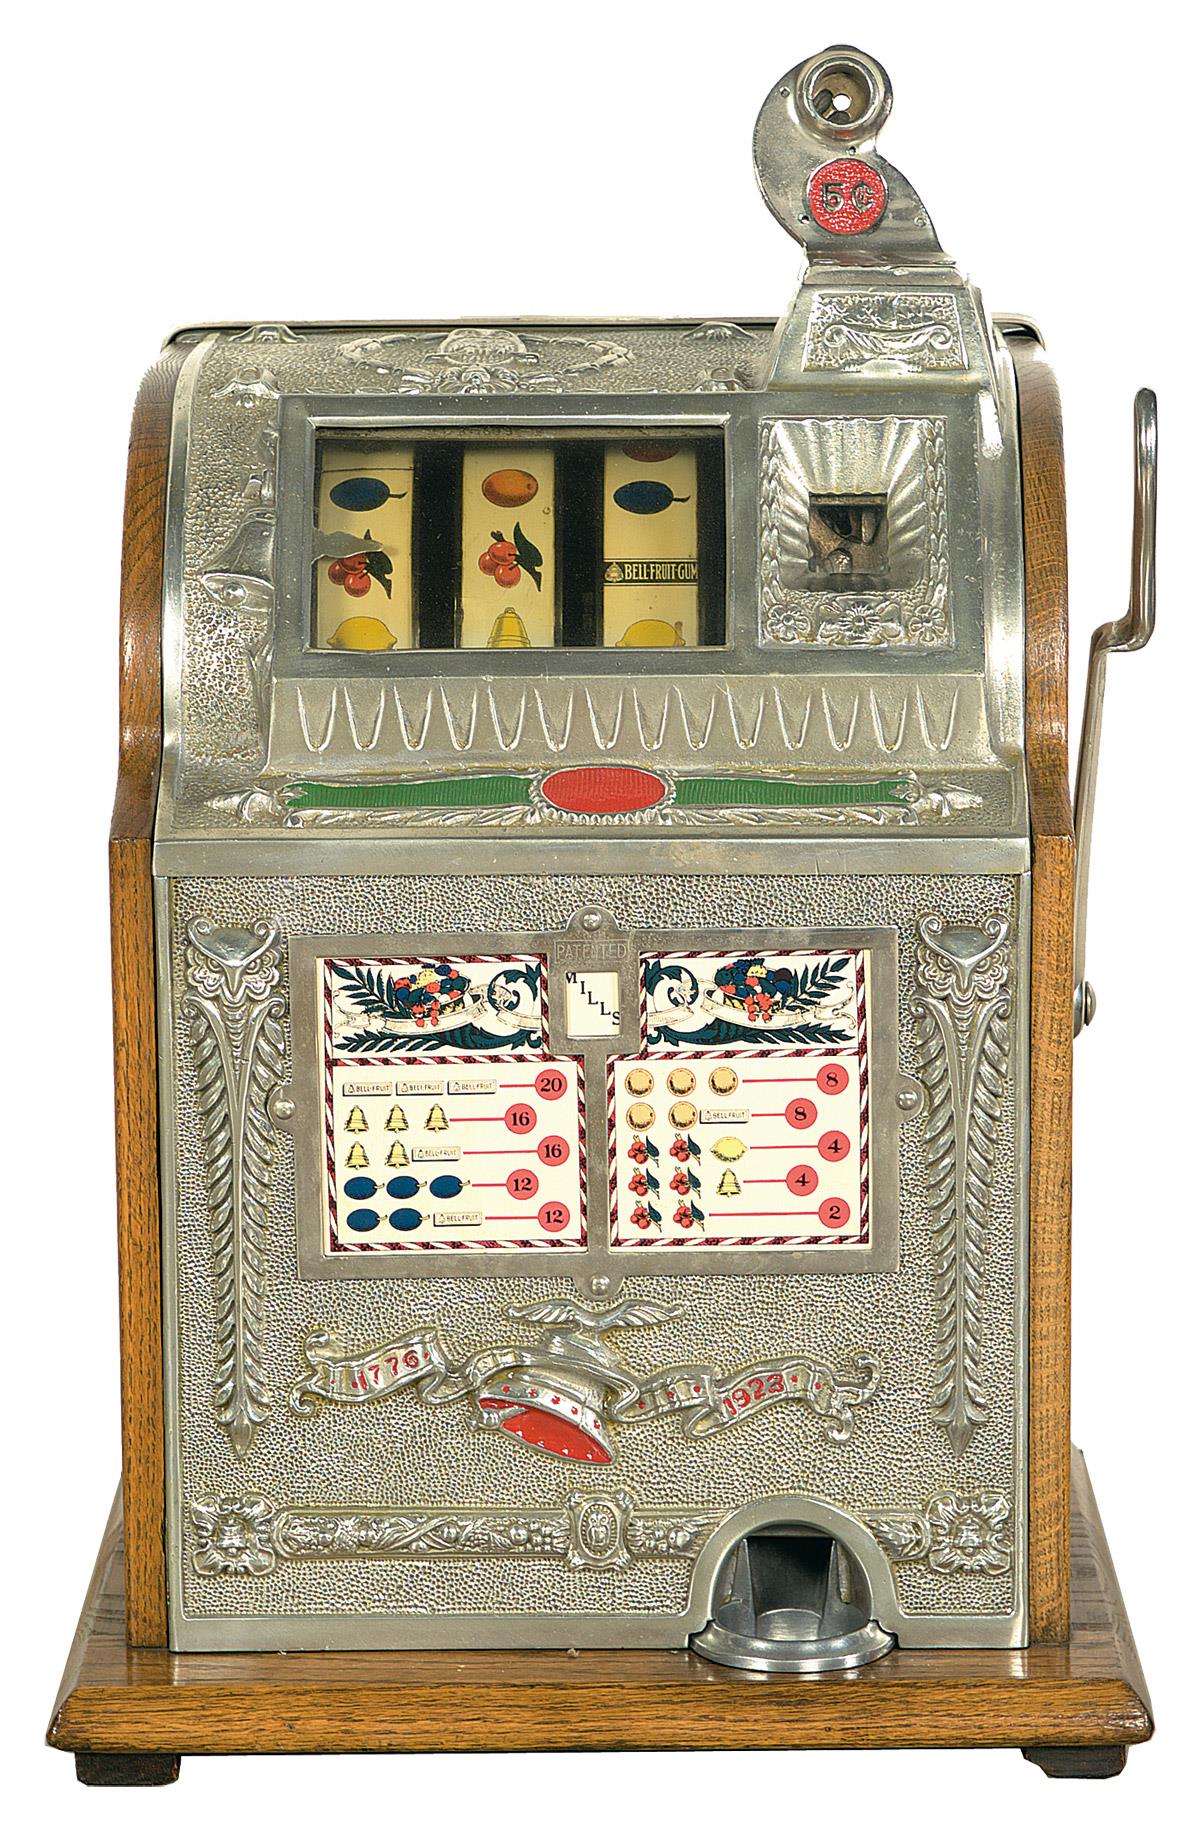 1928 mills slot machine